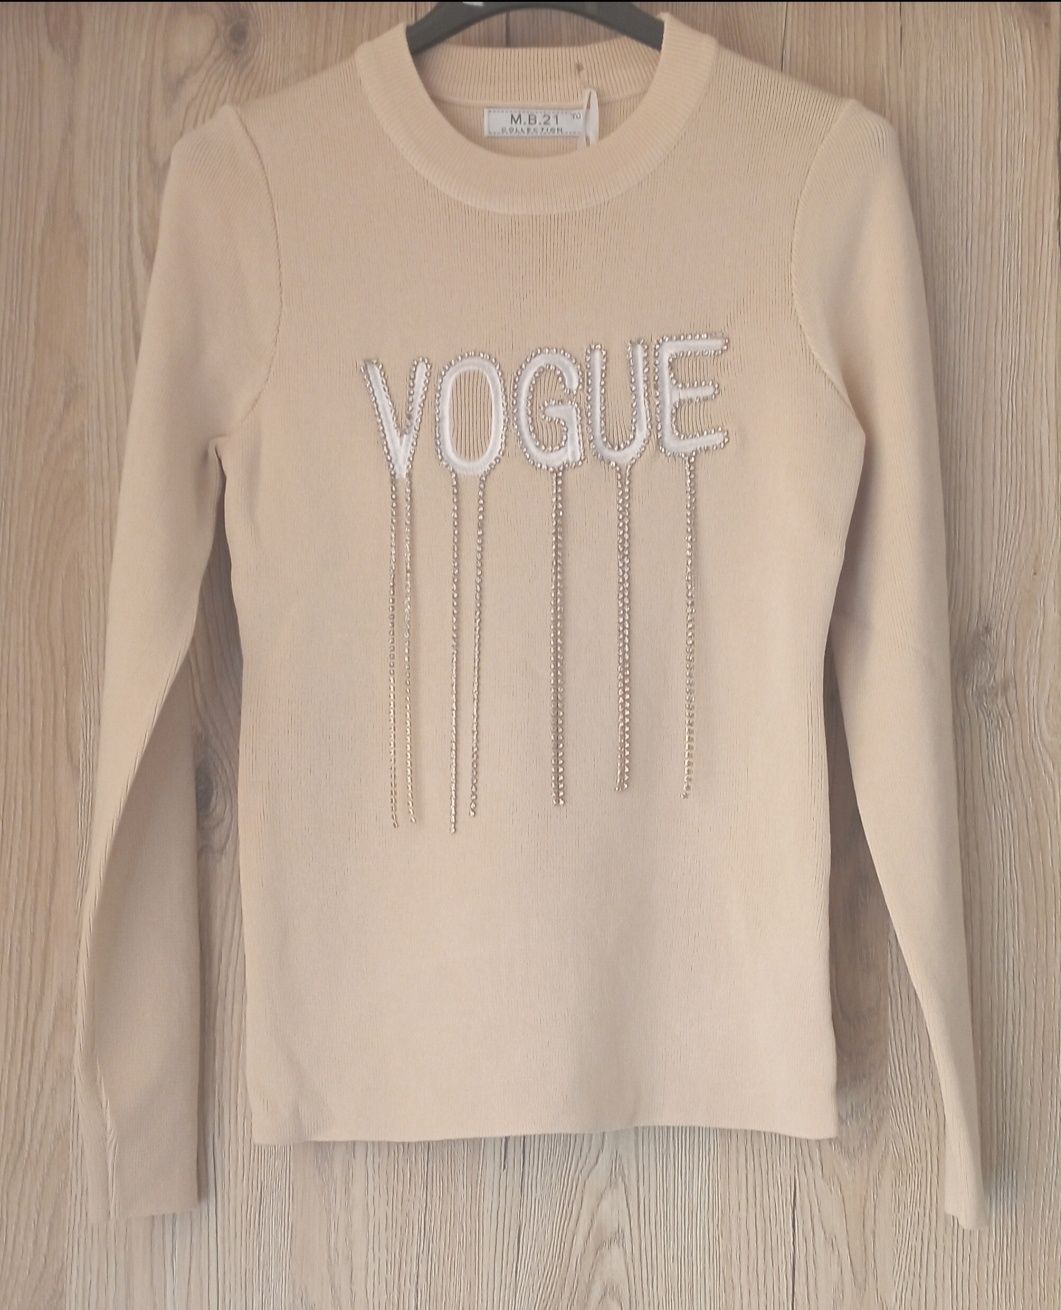 Bluzeczki Vogue!!!